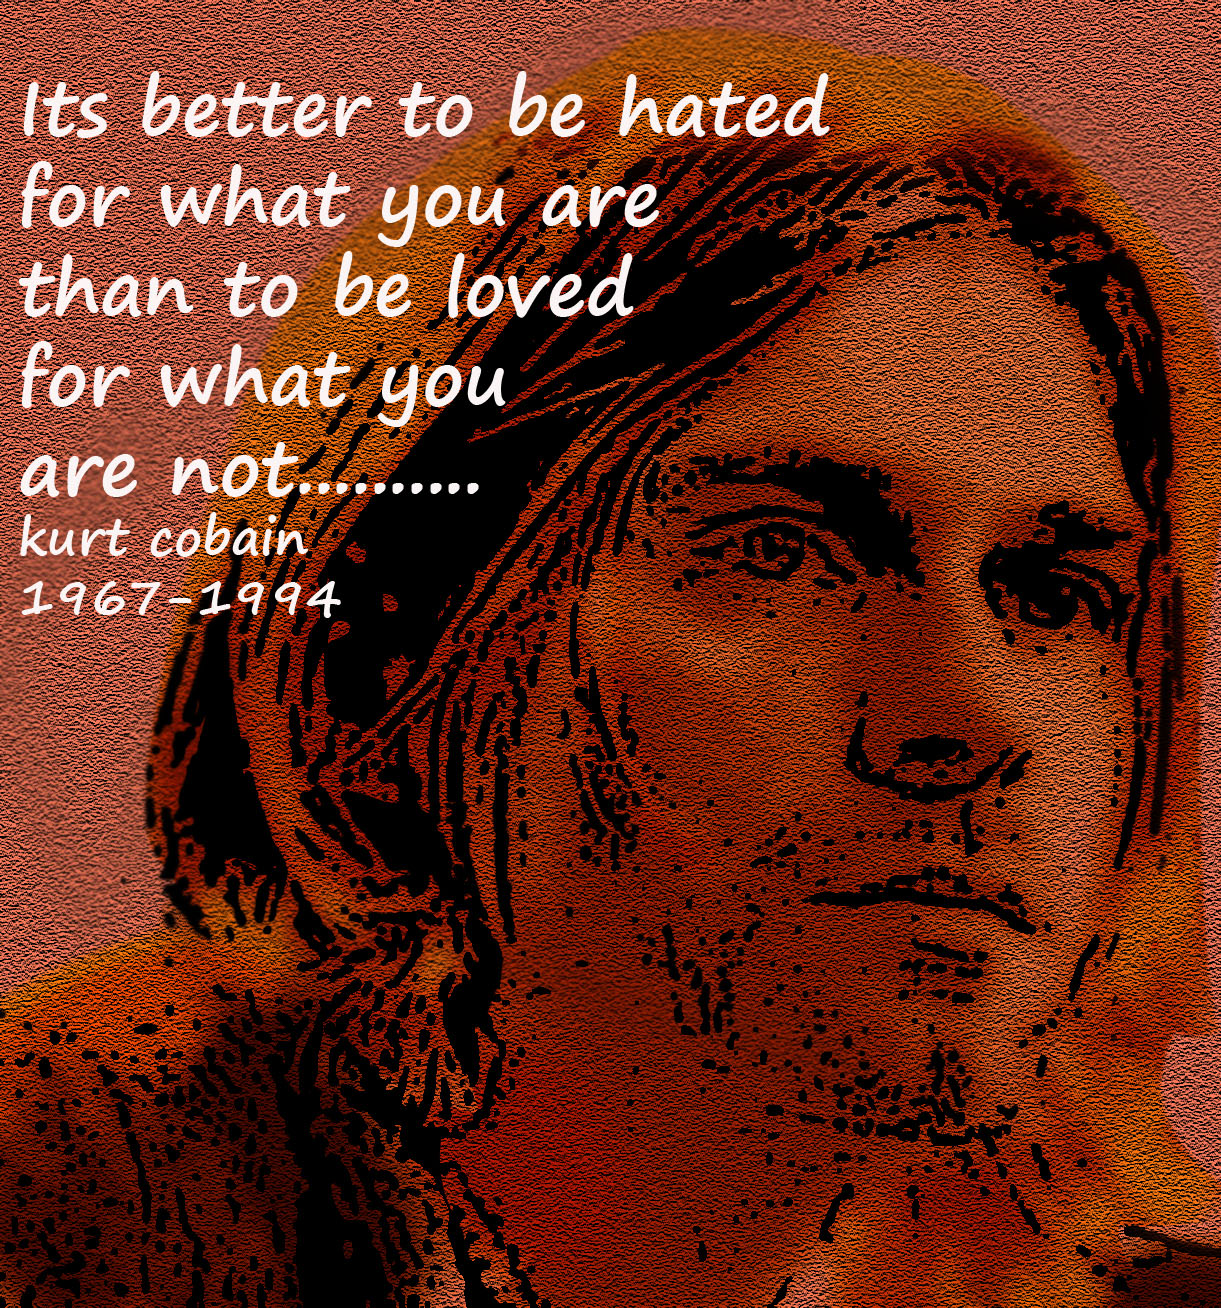 Kurt quote #1